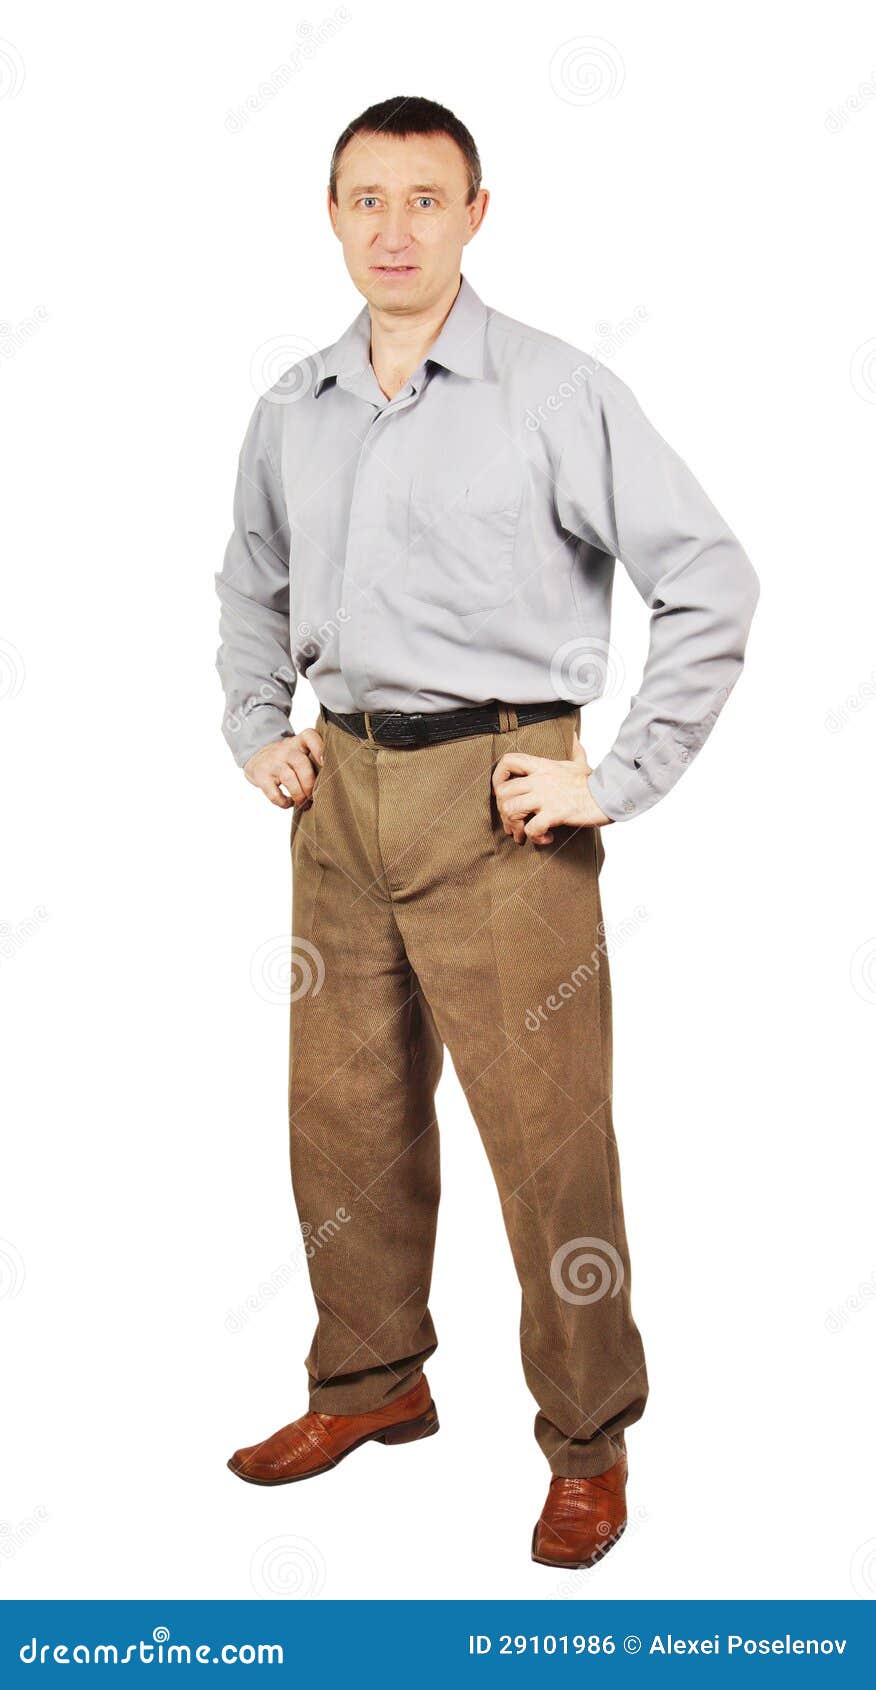 El Hombre De Mediana Edad Se Vistió En Pantalones Y Camisa Gris Foto de archivo - Imagen envejecido,